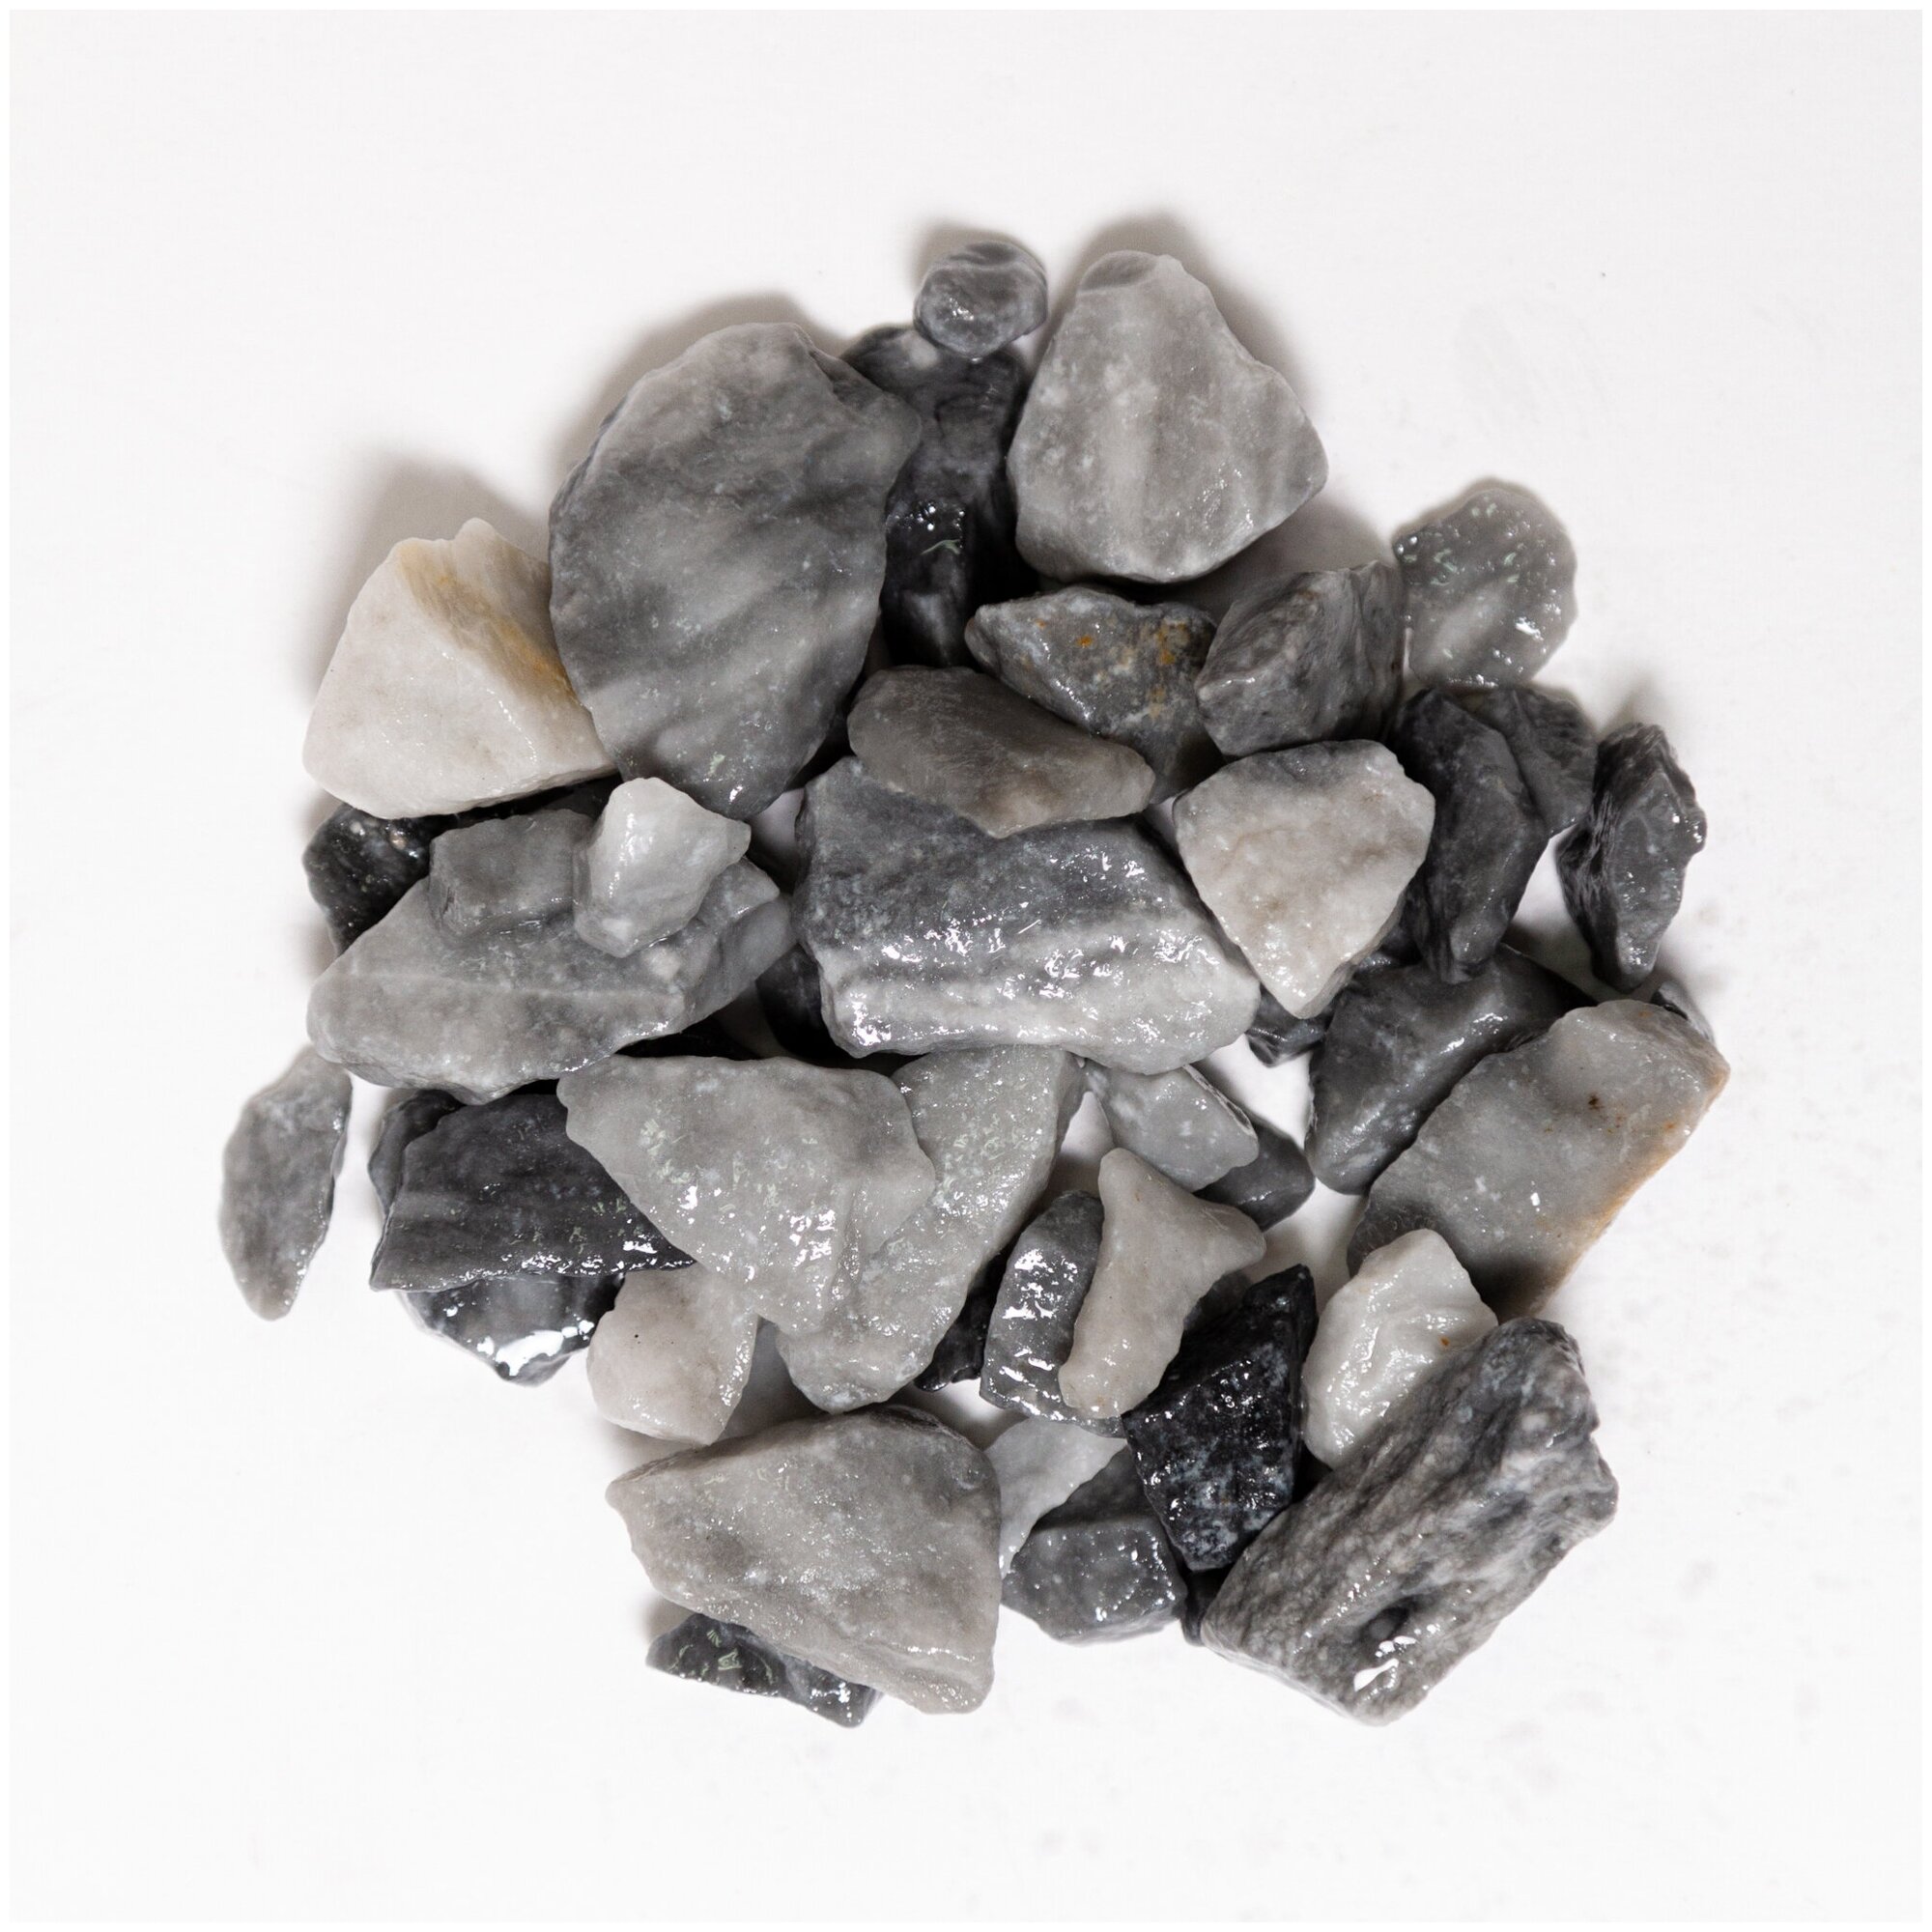 Мраморная каменная крошка, цвет серый (окатанный) , фракция 5-10 мм 3 кг (212). Декоративный грунт